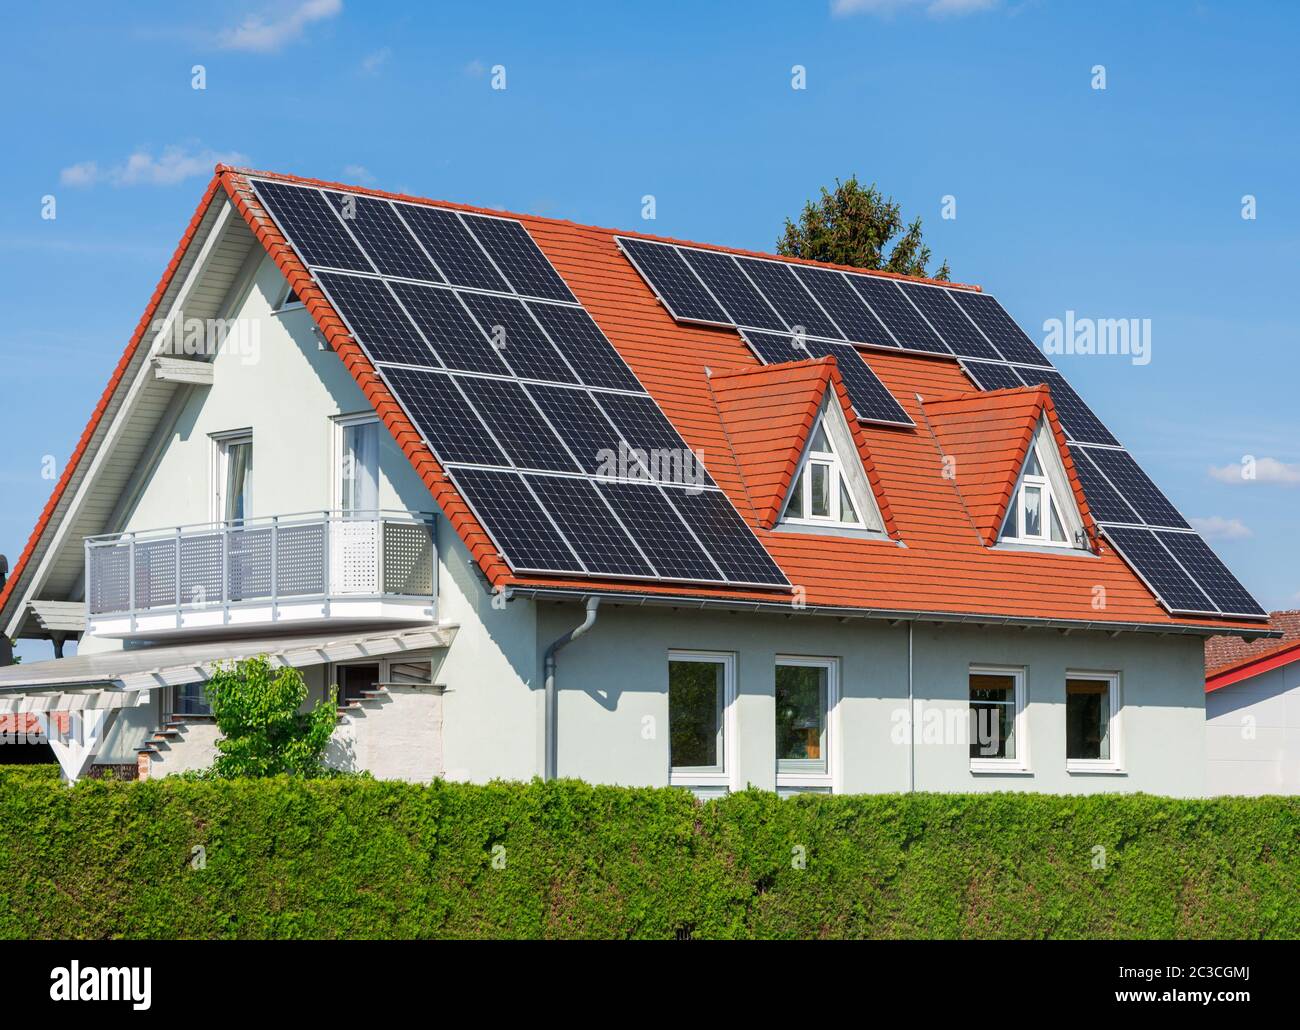 Maison moderne avec les cellules solaires photovoltaïques sur le toit pour la production d'énergie de remplacement Banque D'Images